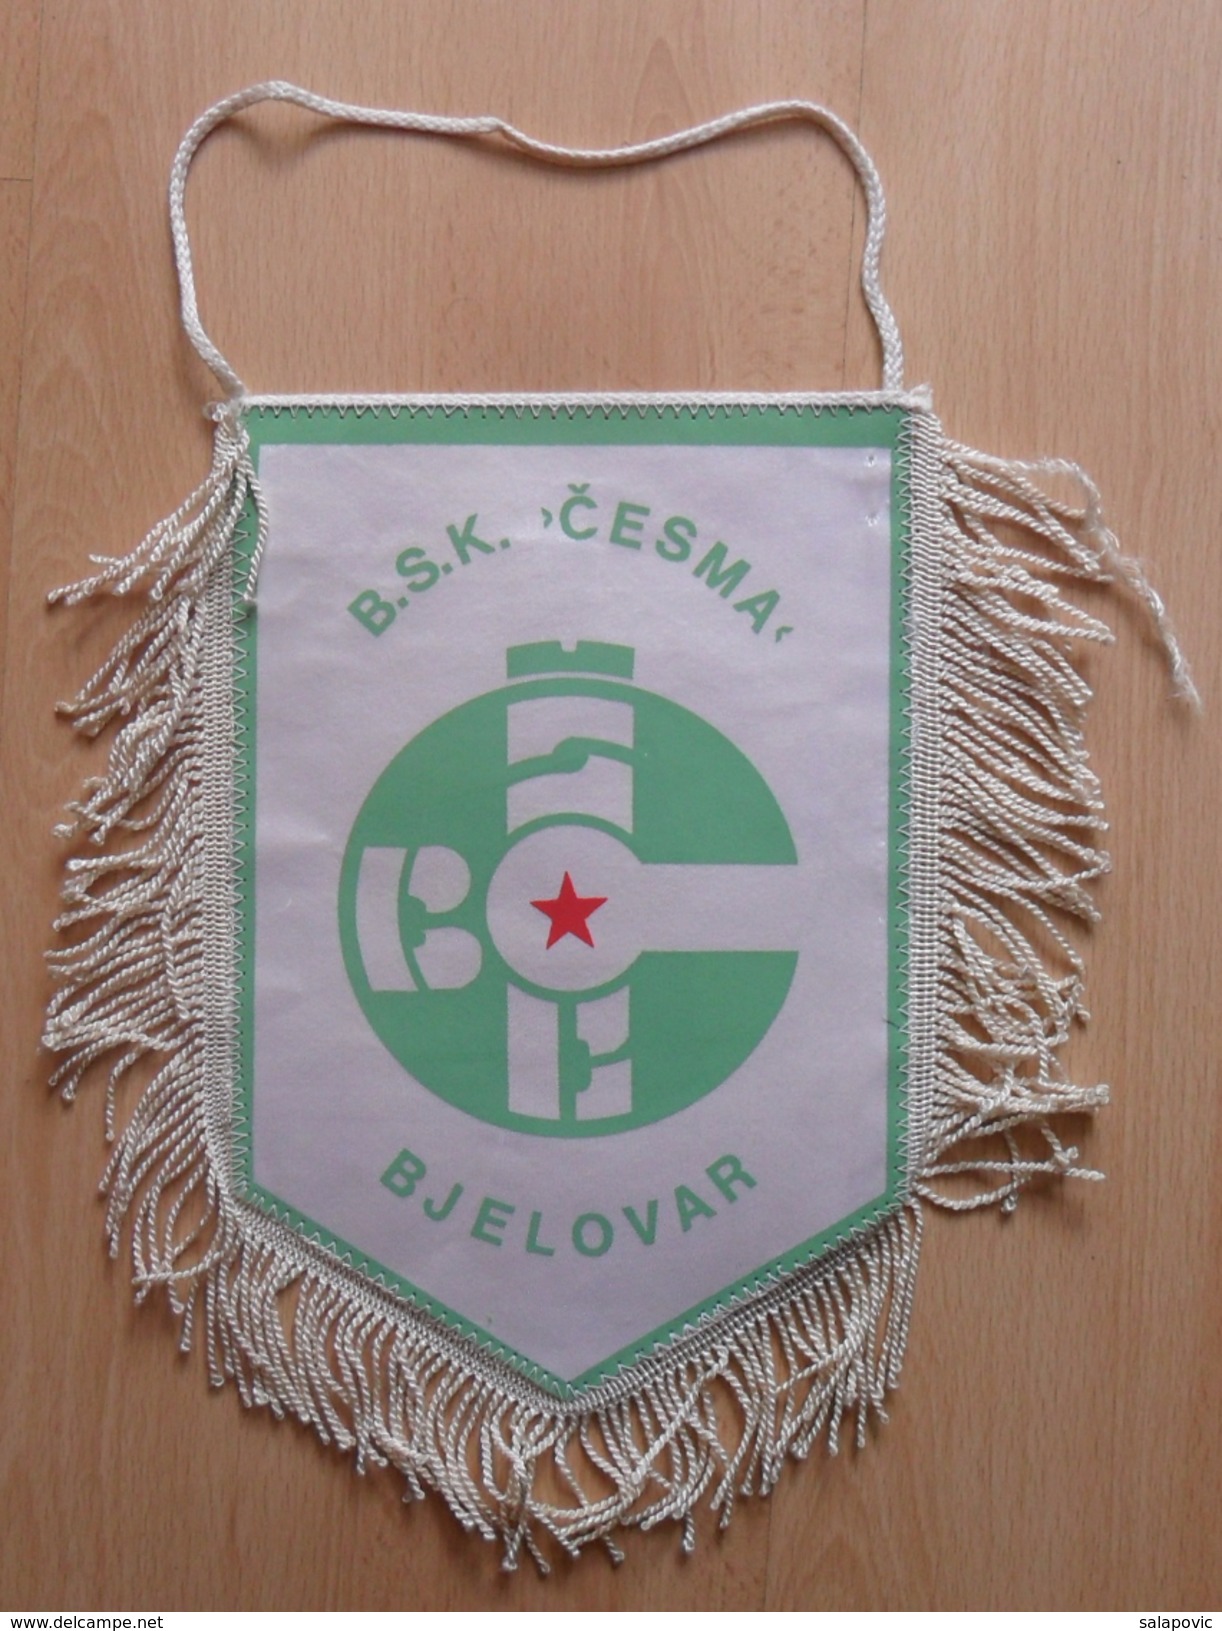 BSK CESMA BJELOVAR Croatia  FOOTBALL CLUB, SOCCER / FUTBOL / CALCIO  OLD PENNANT, SPORTS FLAG - Kleding, Souvenirs & Andere